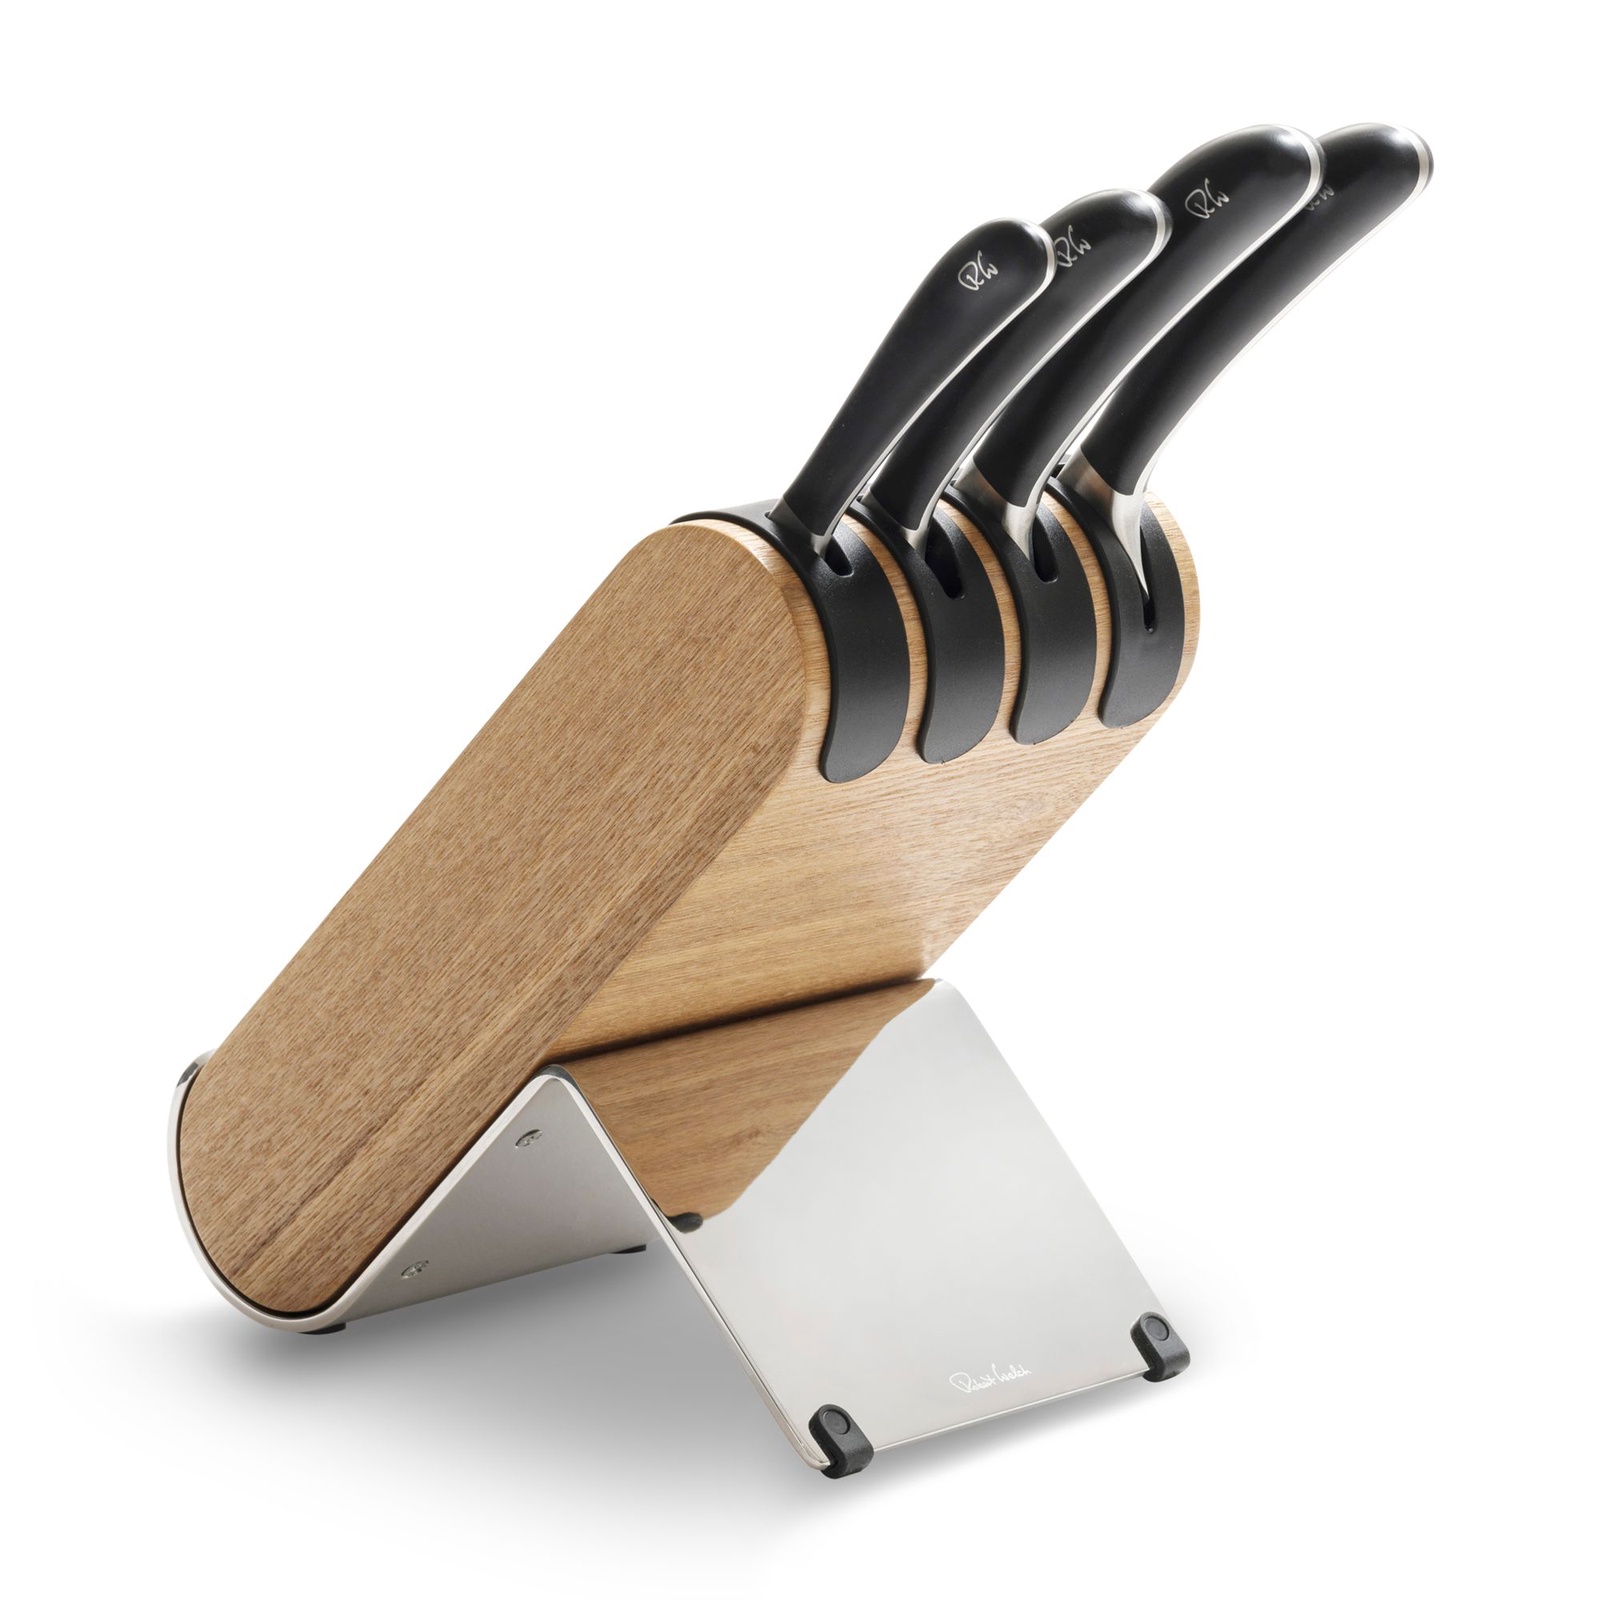 Набор из 4 кухонных ножей в подставке, Signature knife, ROBERT WELCH, Великобритания